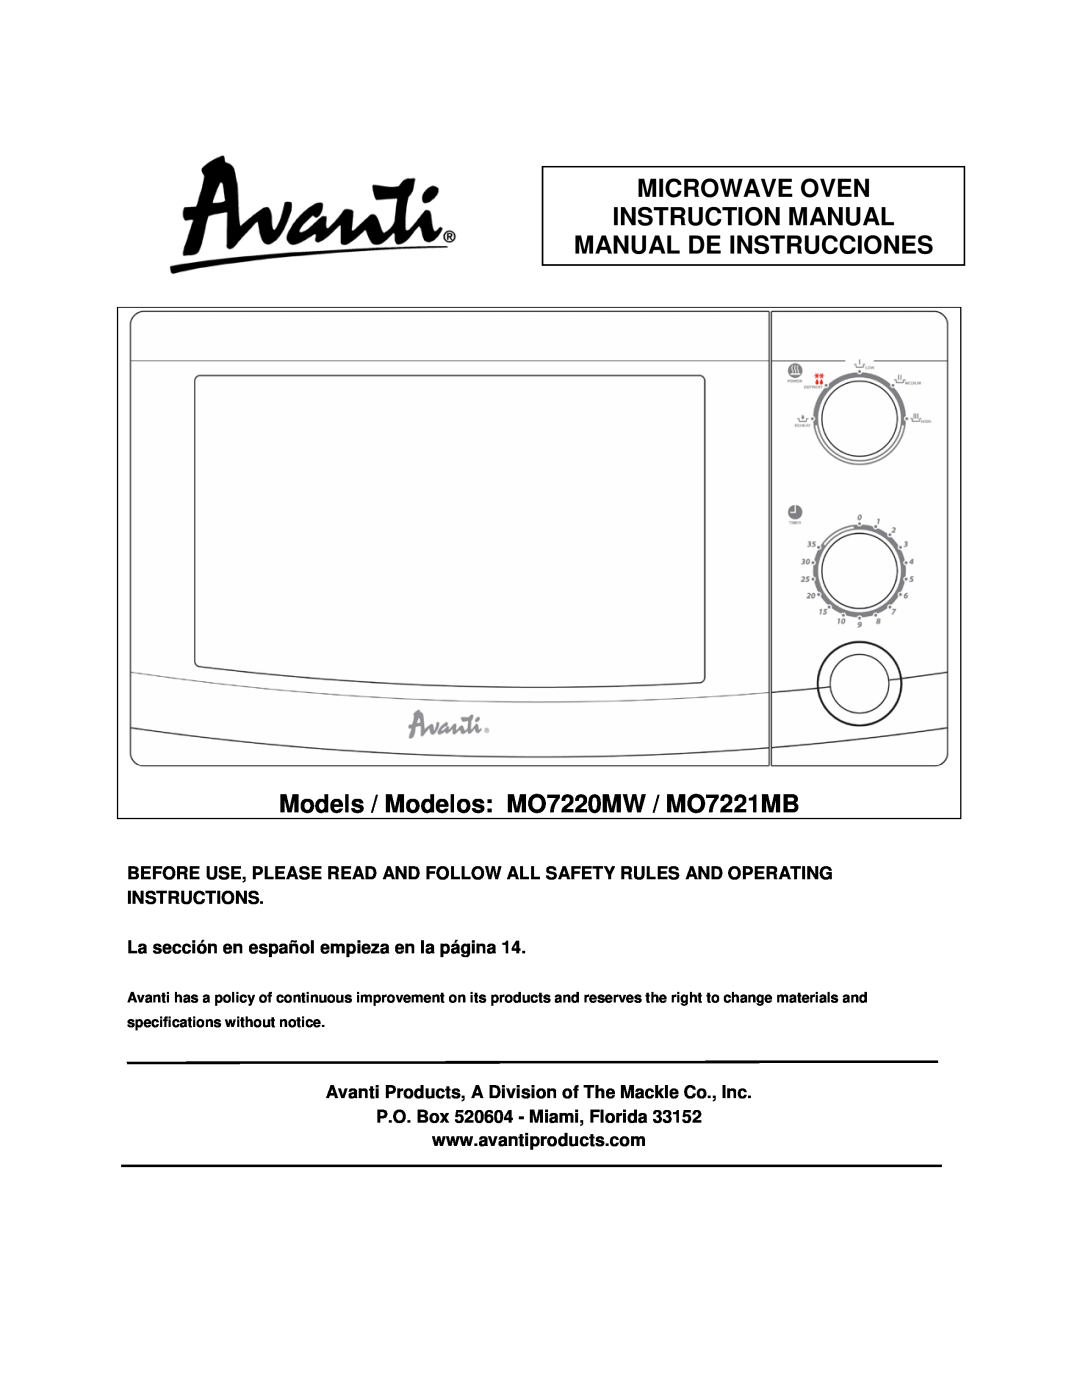 Avanti specifications Manual De Instrucciones, Models / Modelos MO7220MW / MO7221MB, P.O. Box 520604 - Miami, Florida 